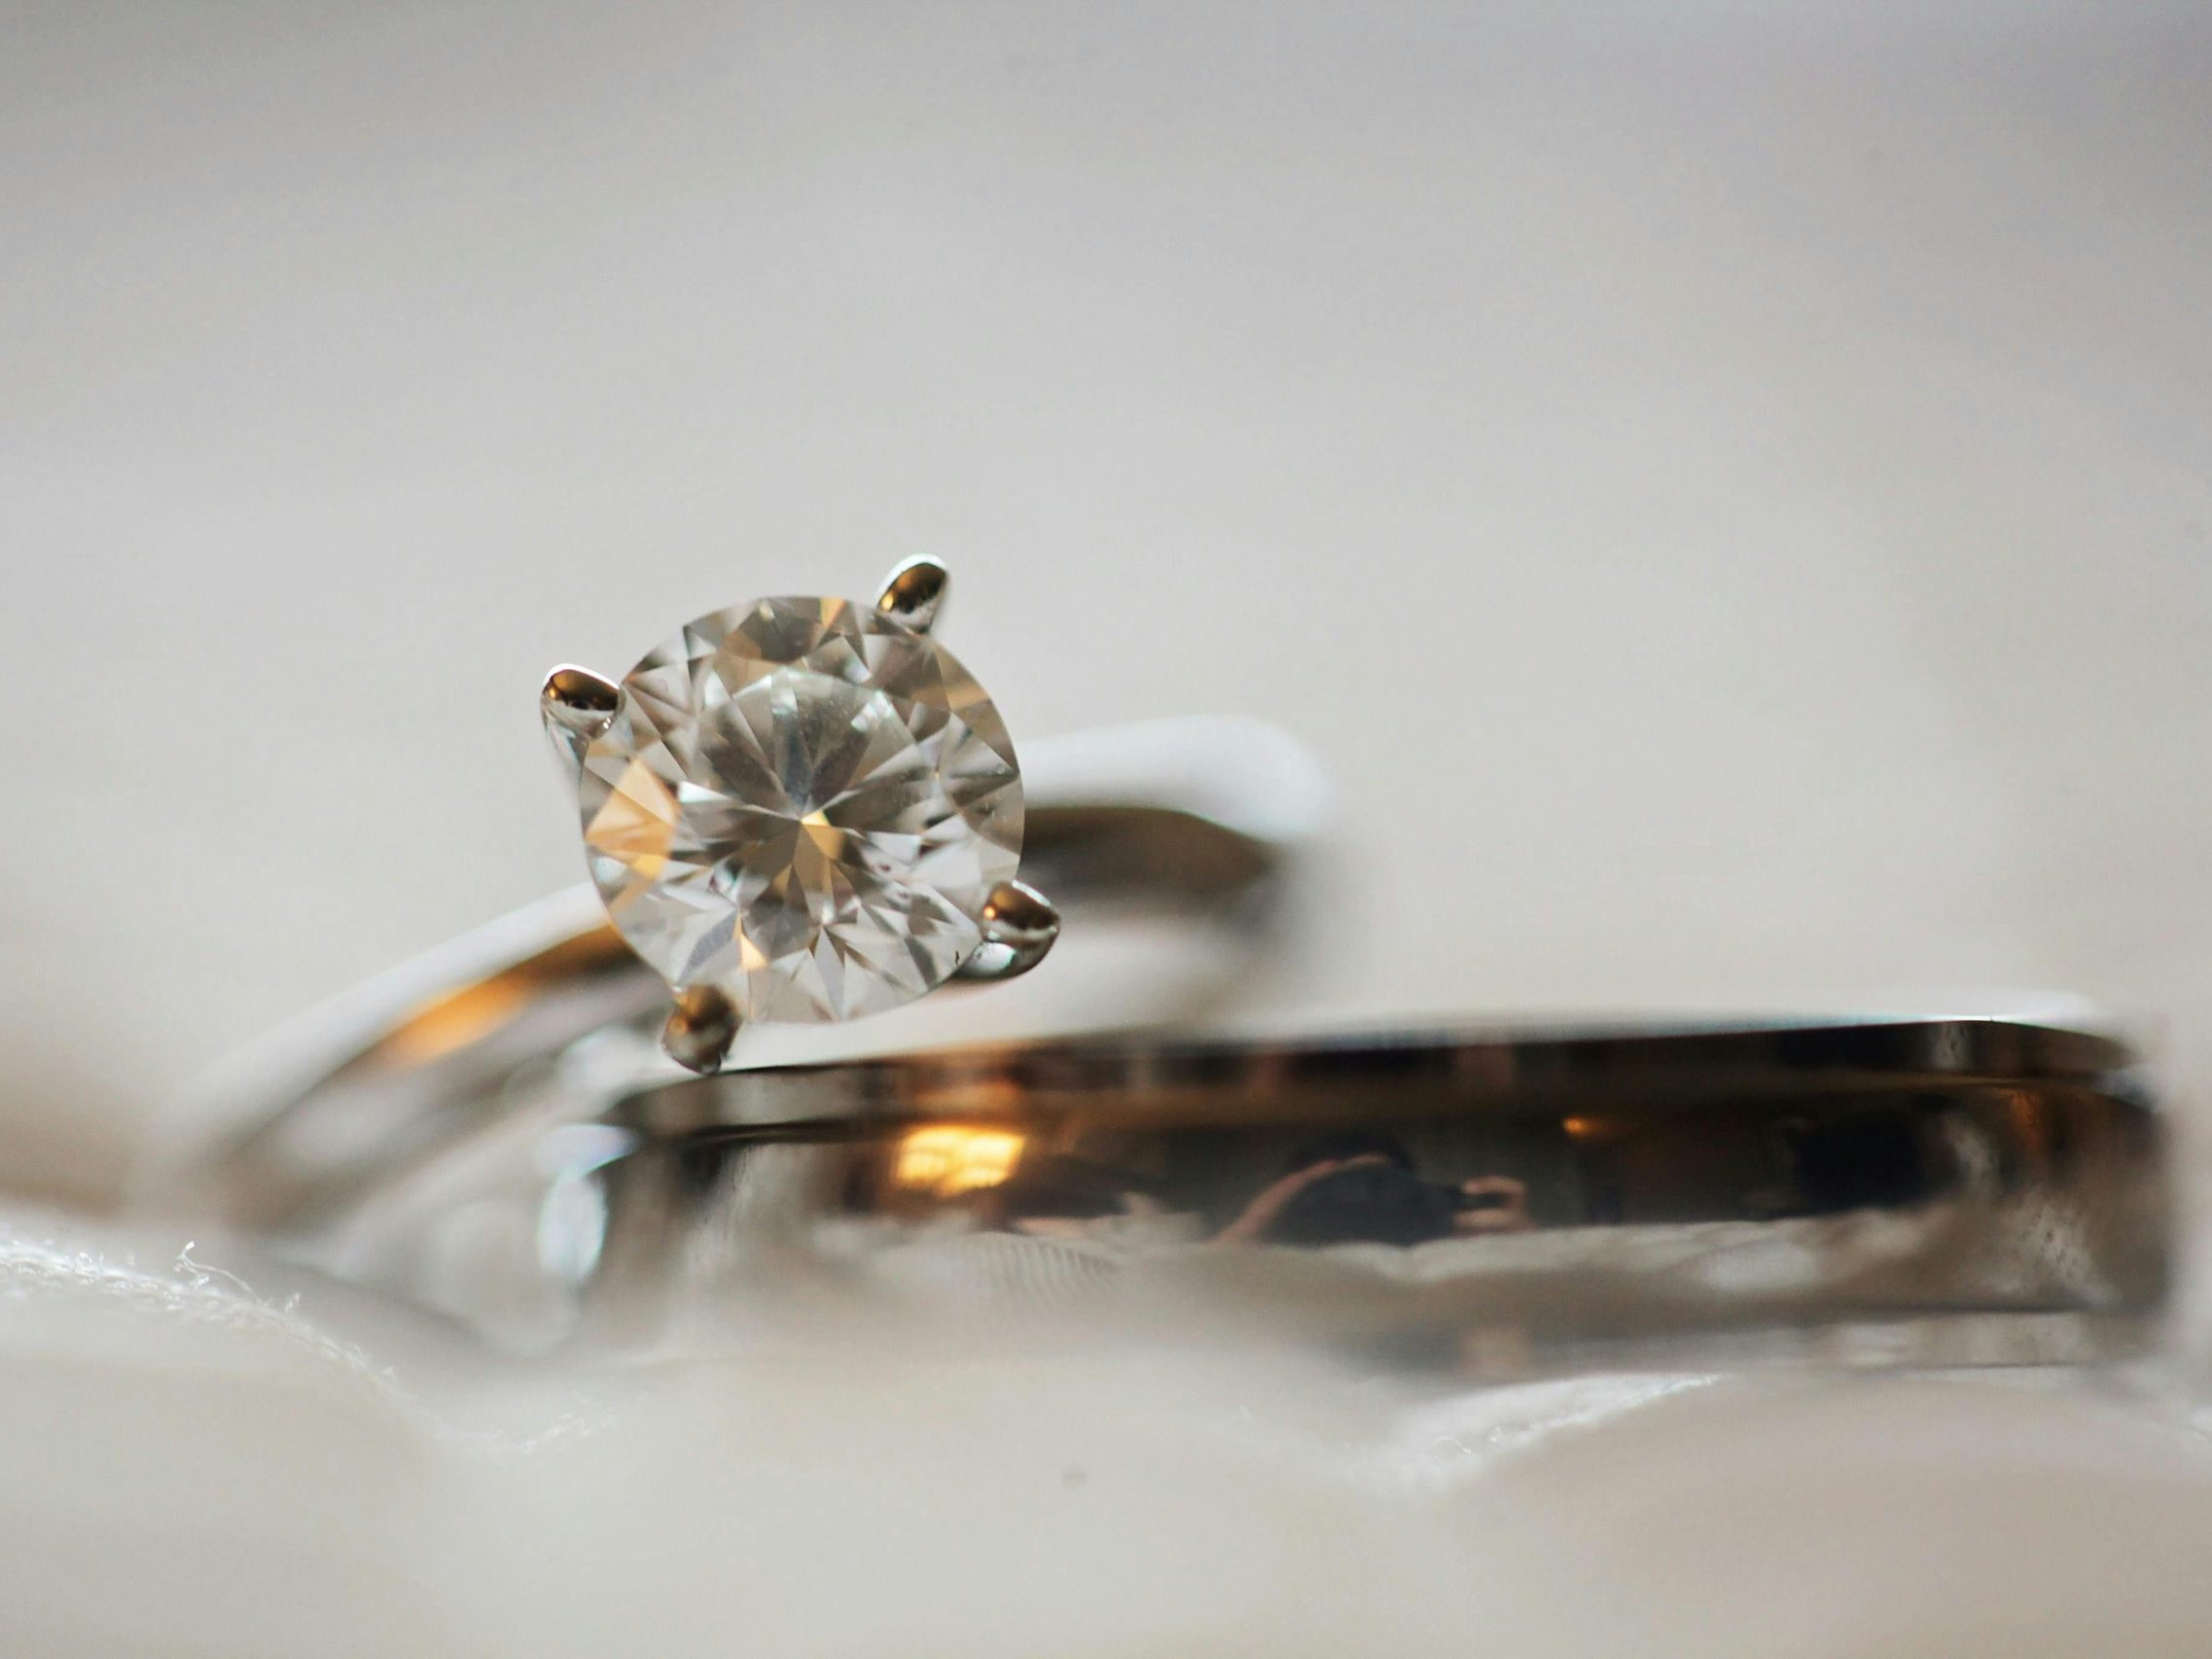 תקריב של טבעת אירוסין יהלום נקייה מונחת מעל רצועת נישואין תואמת, משובצת על רקע רך ומטושטש.